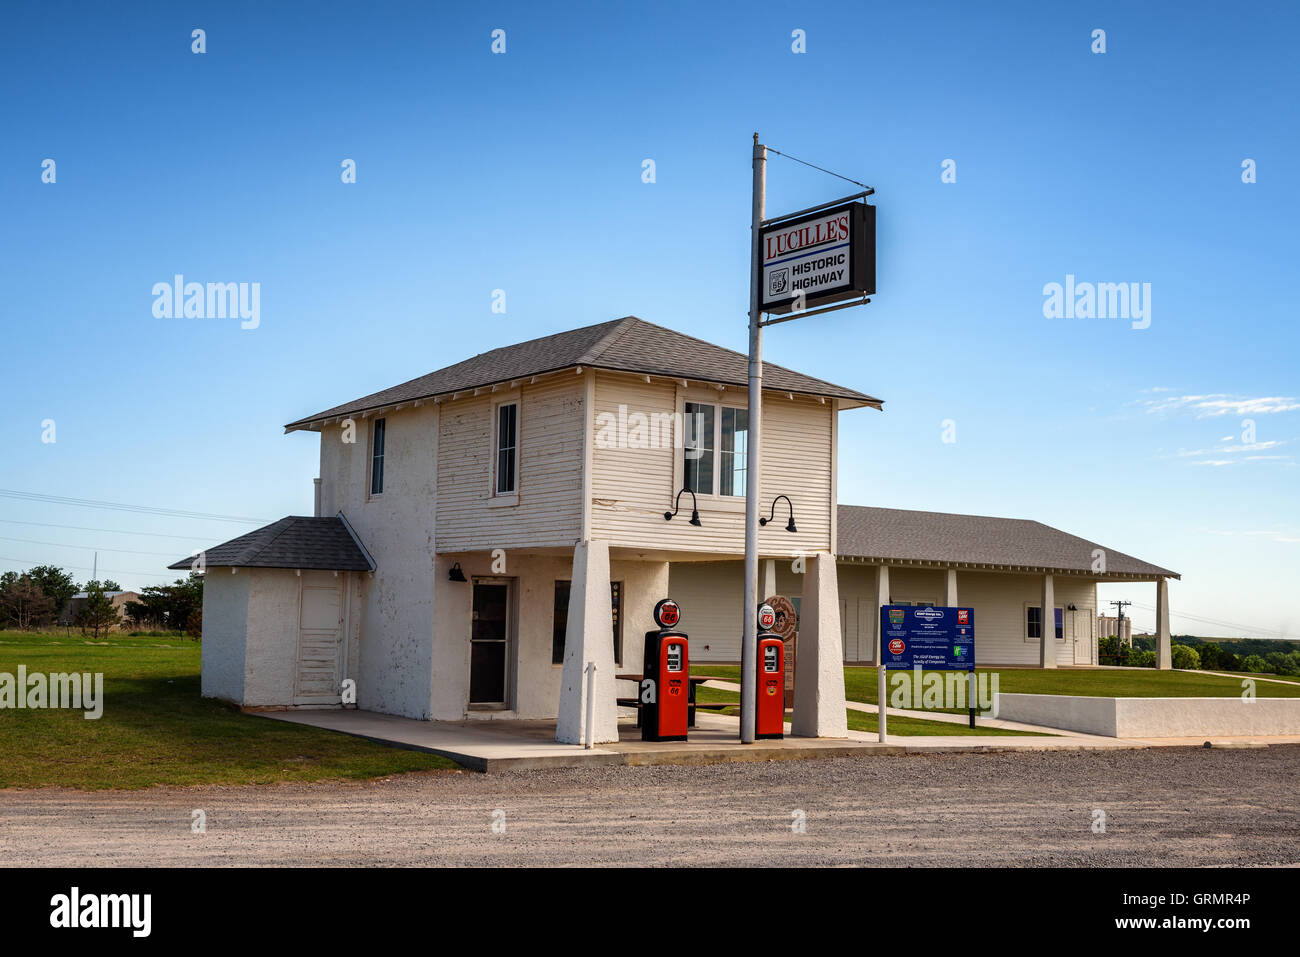 Lucille la stazione di servizio, un classico e la storica stazione di gas lungo la Route 66 vicino a Idro, Oklahoma. Foto Stock